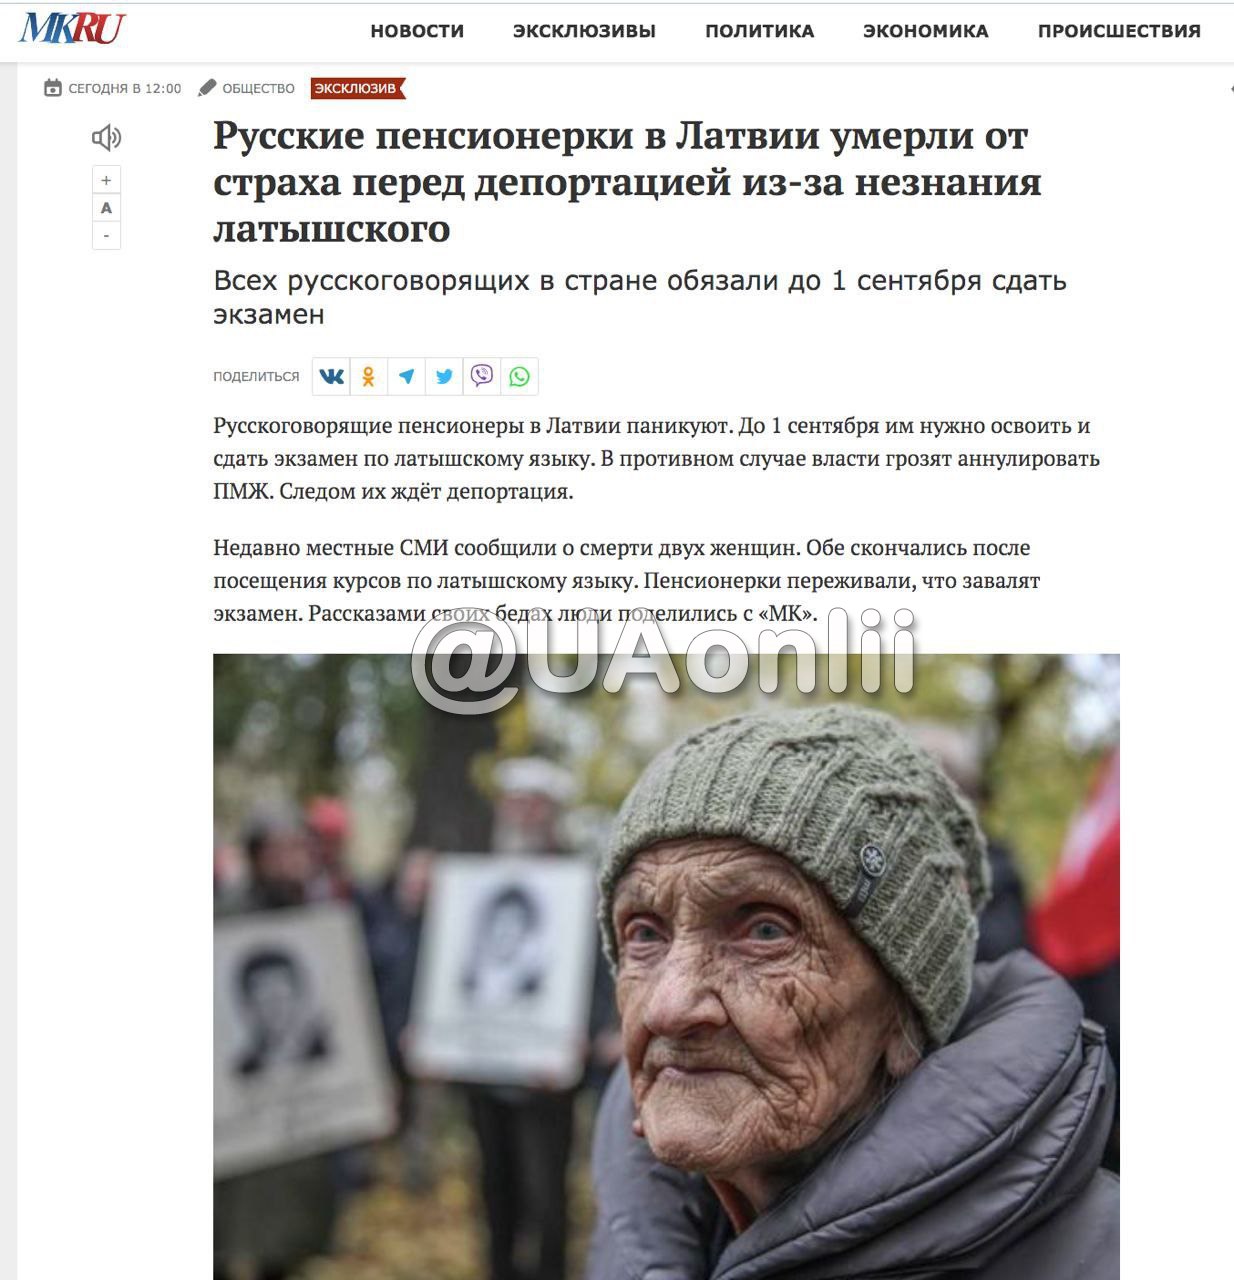 Русскоязычные пенсионерки из Латвии умерли после посещения курсов латышского языка, — росСМИ🤦‍♂️